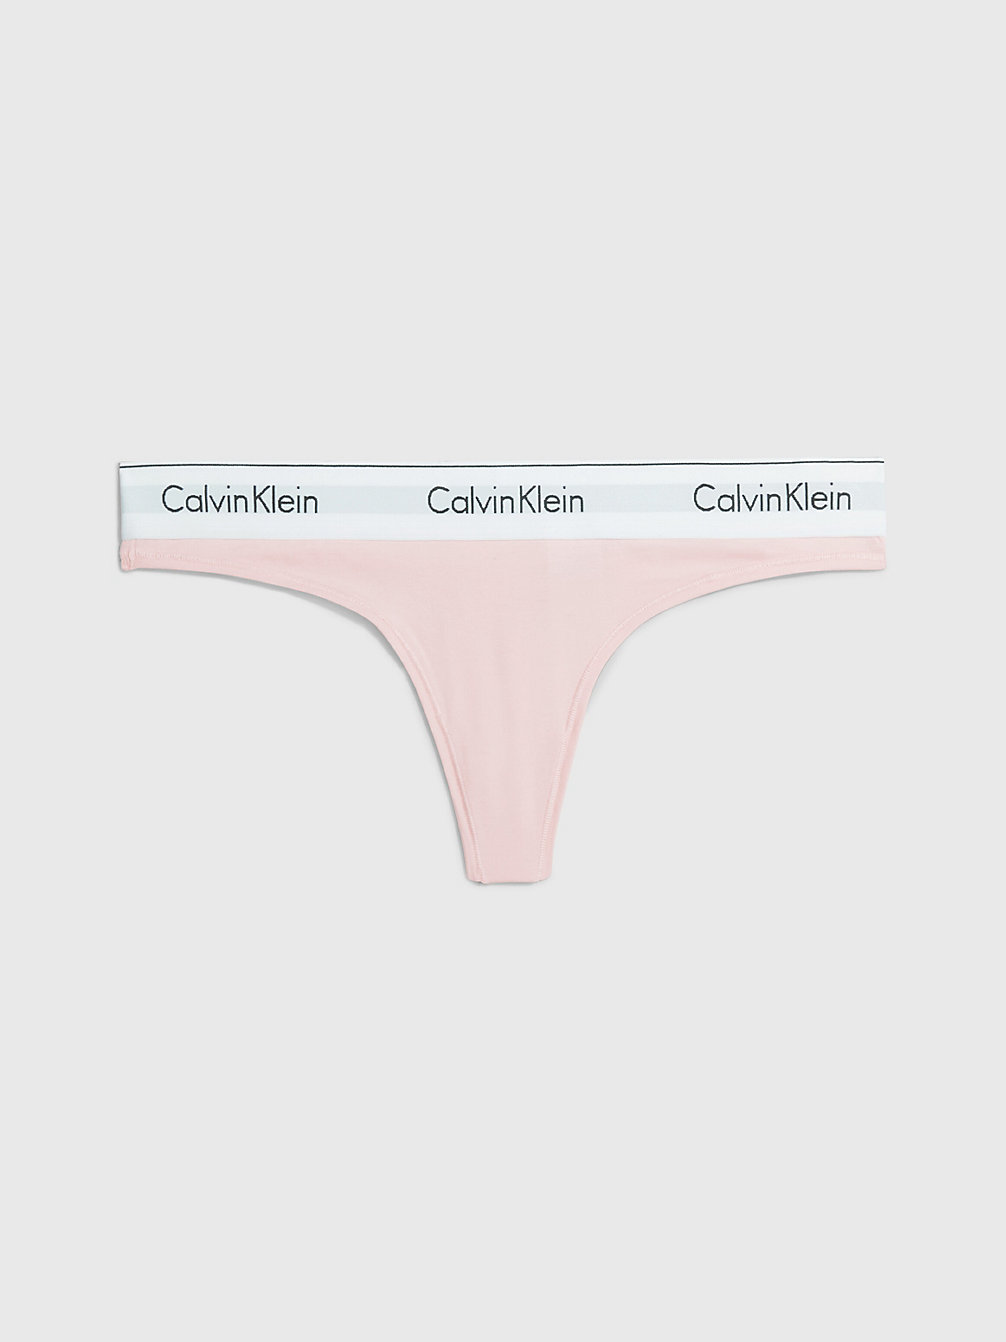 NYMPHS THIGH Thong - Modern Cotton undefined women Calvin Klein